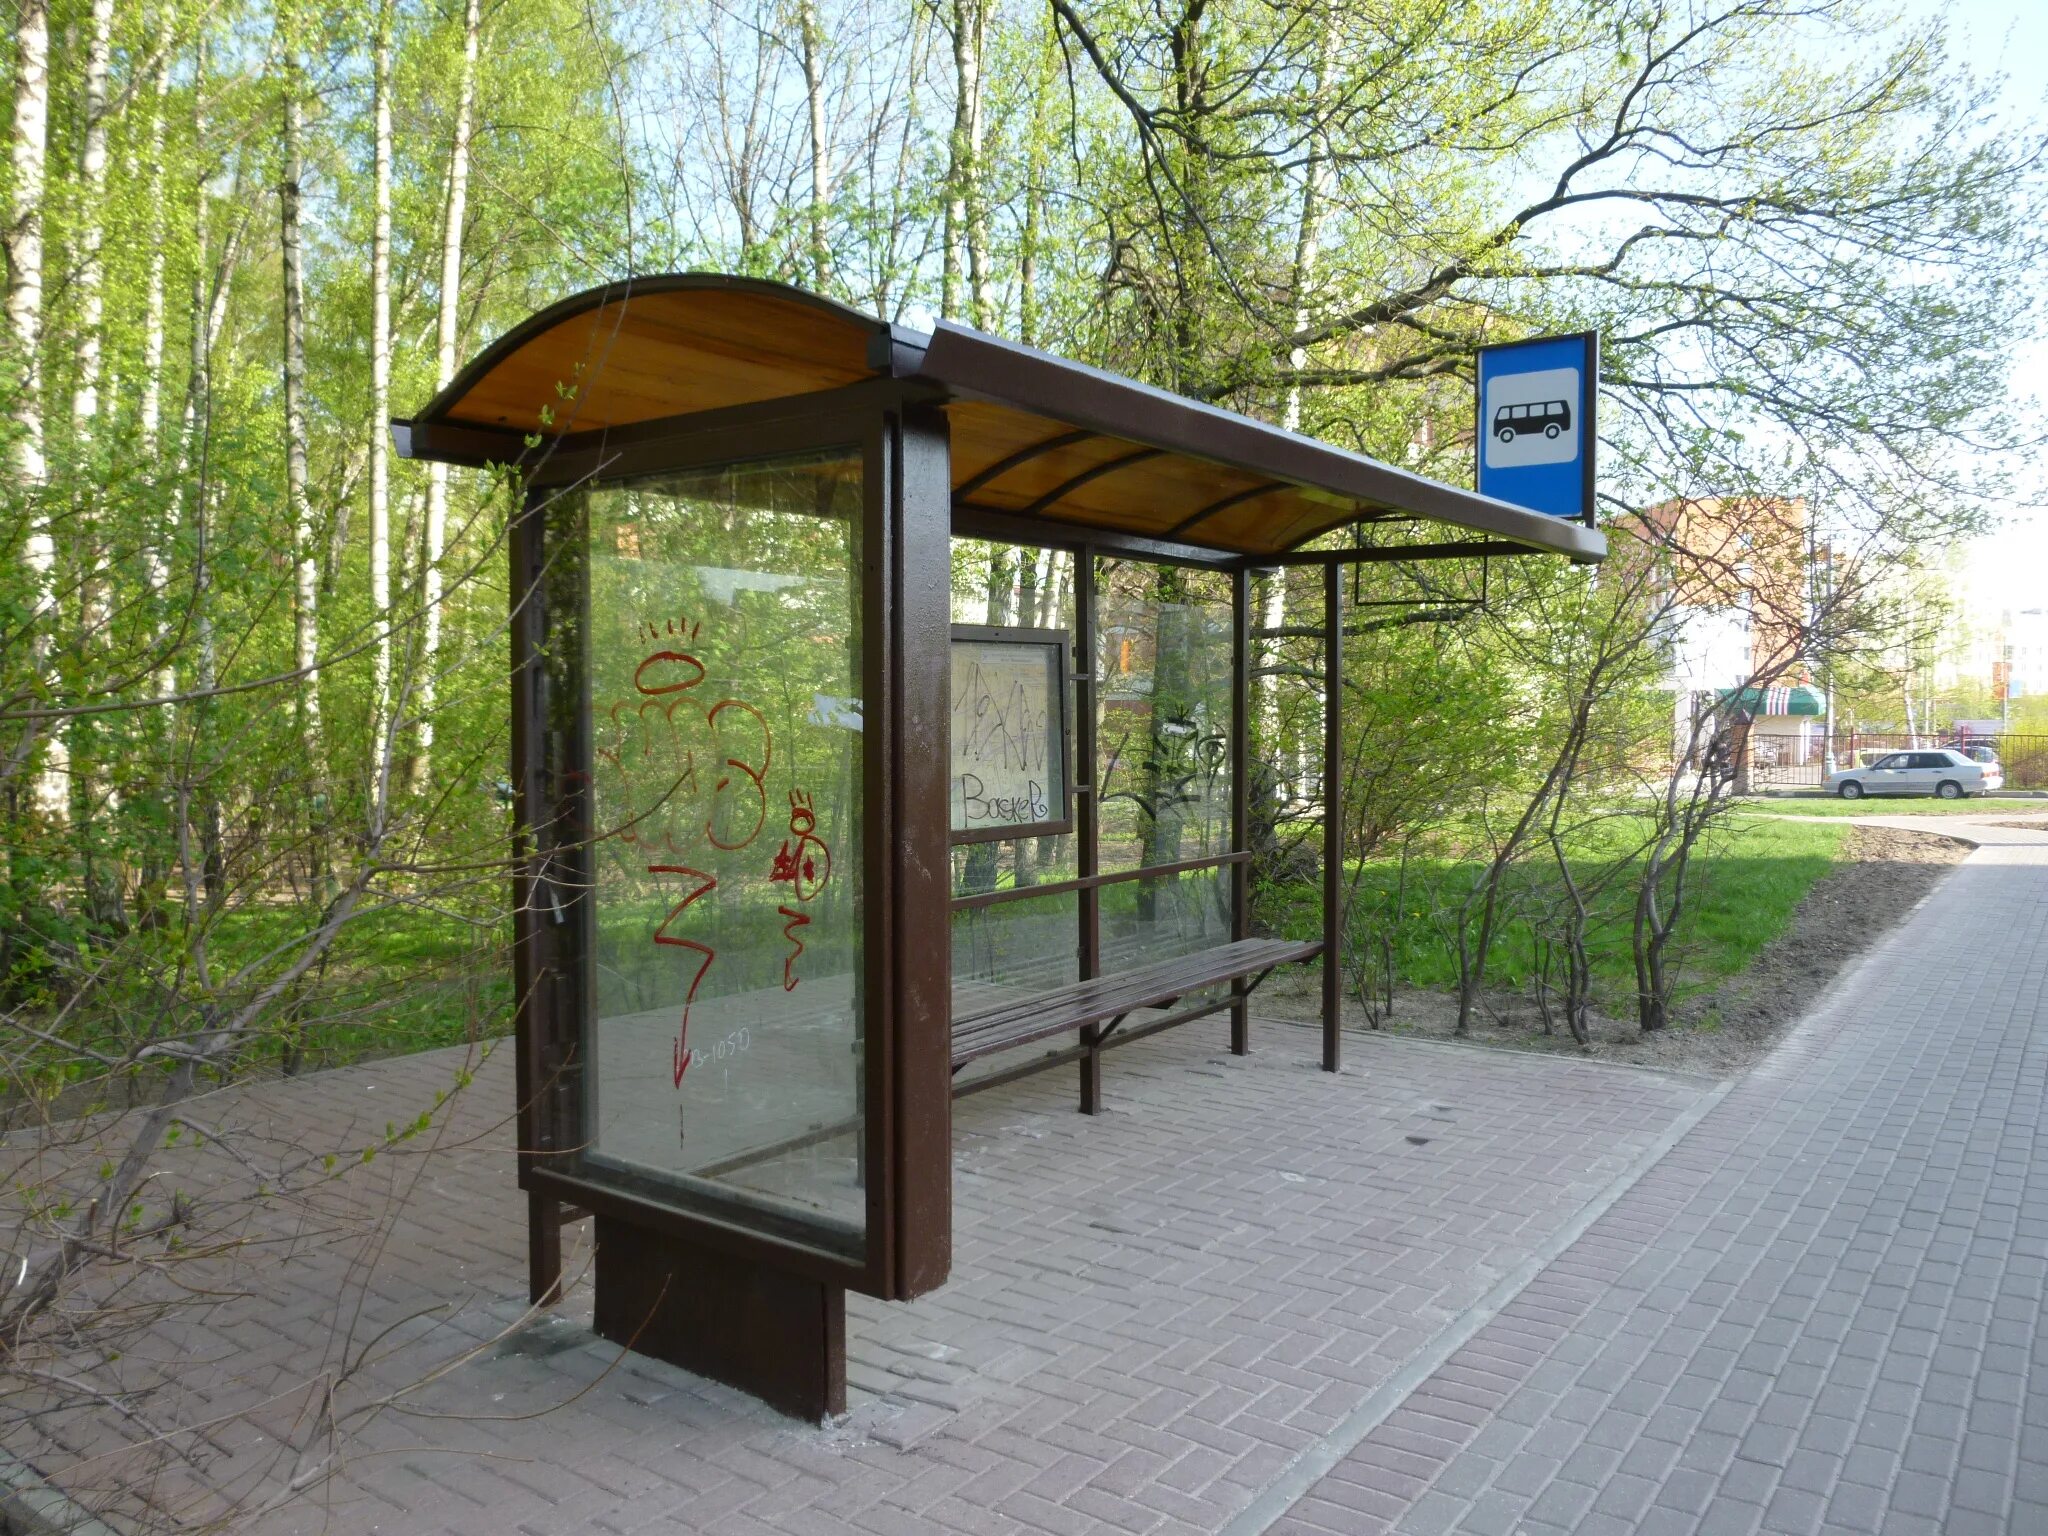 Остановка общественного транспорта в городе. Солар-м1 павильон остановочный. Автобусная остановка. Остановки в Москве. Автоюбусная остановка.